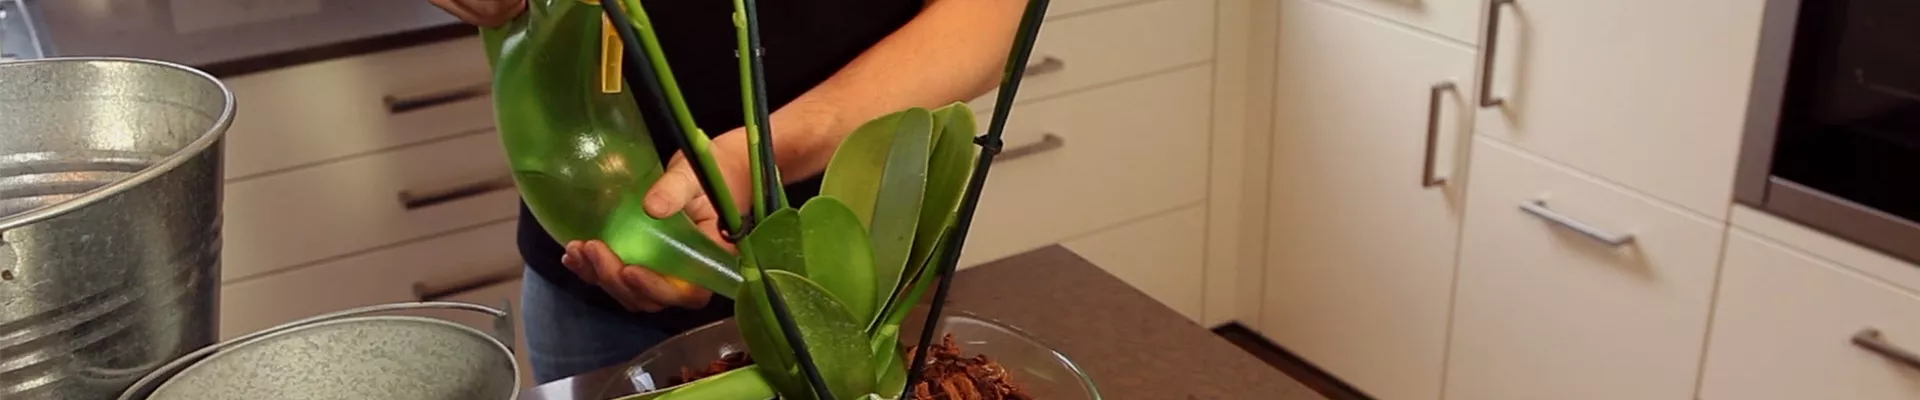 Orchidee - Einpflanzen in ein Gefäß (thumbnail)